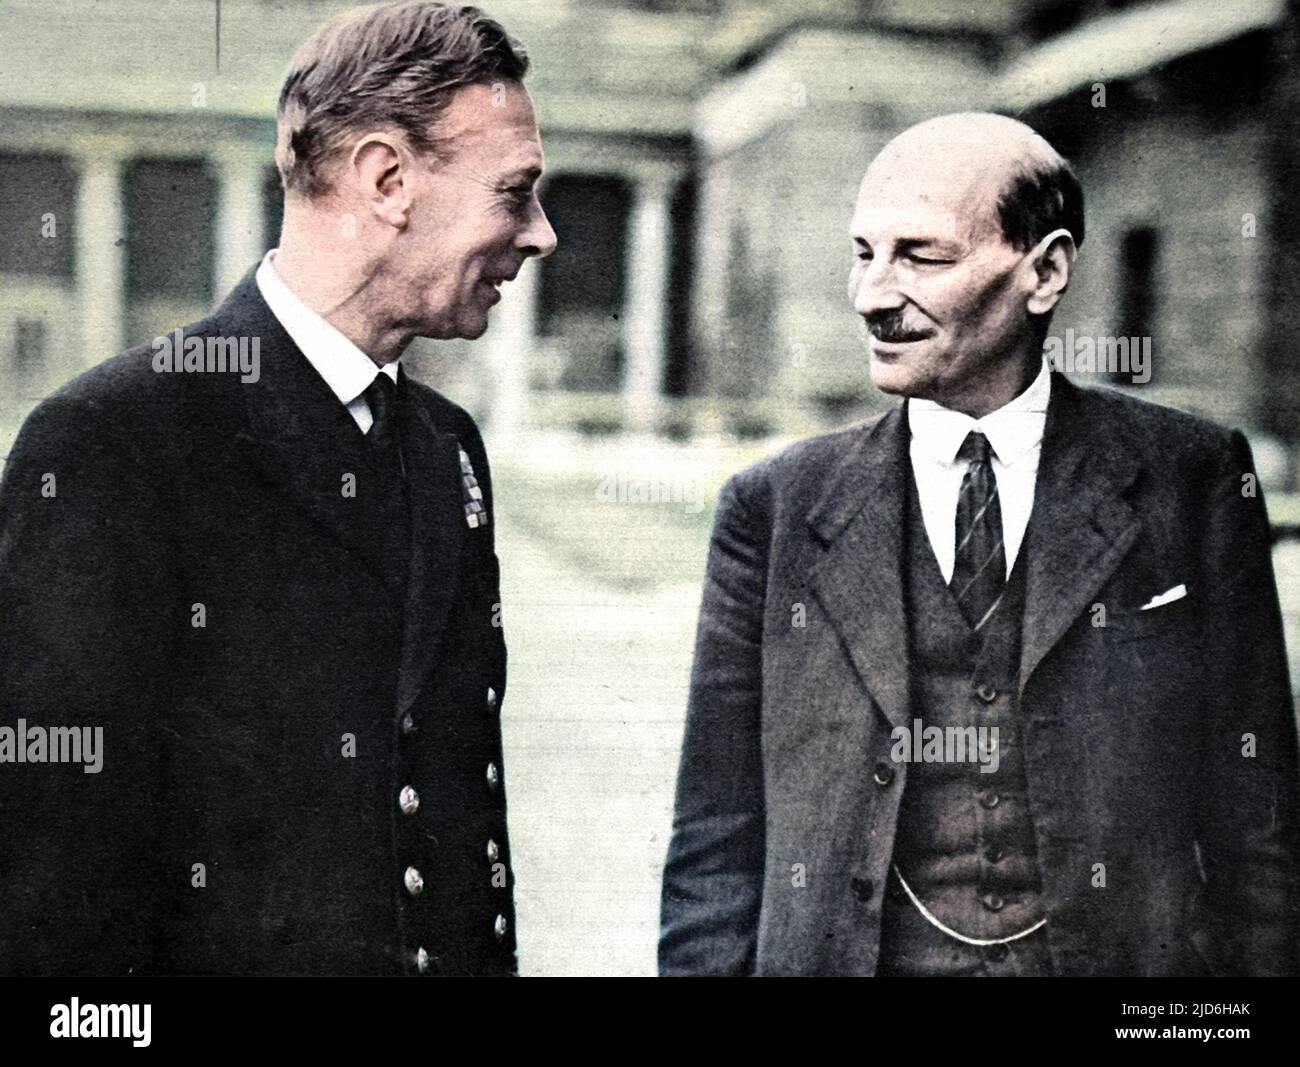 King George VI (1895 - 1952) und Clement Attlee, 1. Earl Attlee, (1883-1967) auf dem Gelände des Buckingham Palace, 1945. Attlee hatte gerade die Labour Party zum Sieg bei den Parlamentswahlen geführt und wurde damit Premierminister. Kolorierte Version von: 10218552 Datum: 1945 Stockfoto